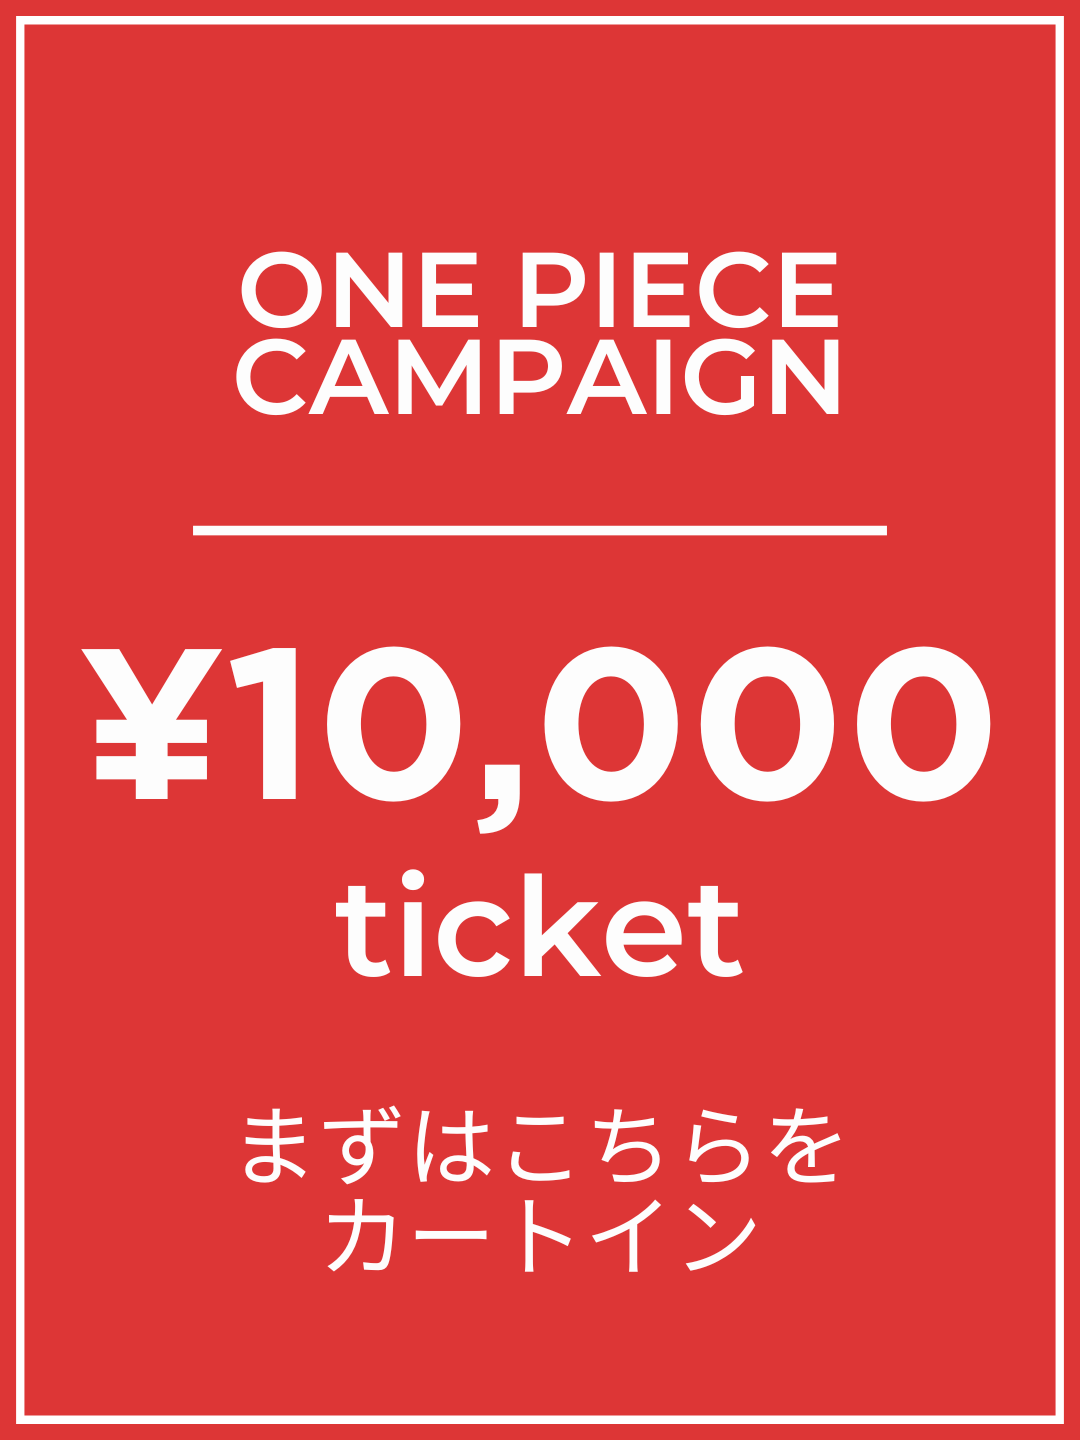 【1番初めにこちらをカートイン】¥10,000チケット【6月】